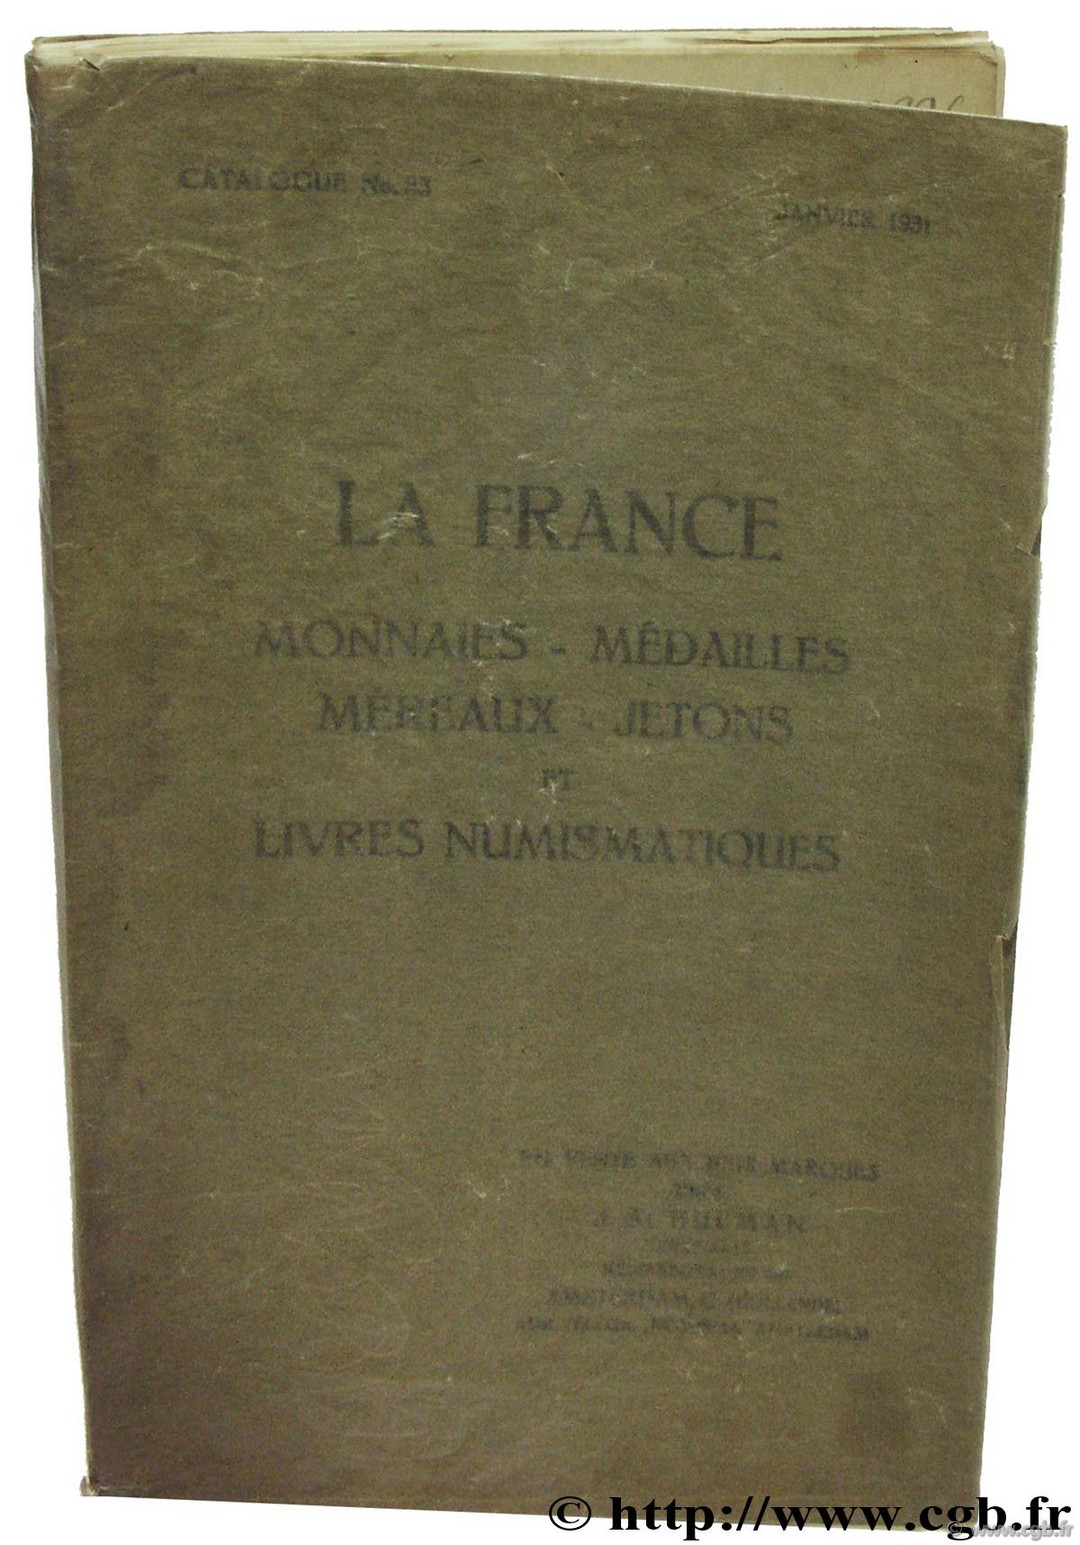 La France monnaies, médailles, méreaux, jetons et livres numismatiques SCHULMAN J.